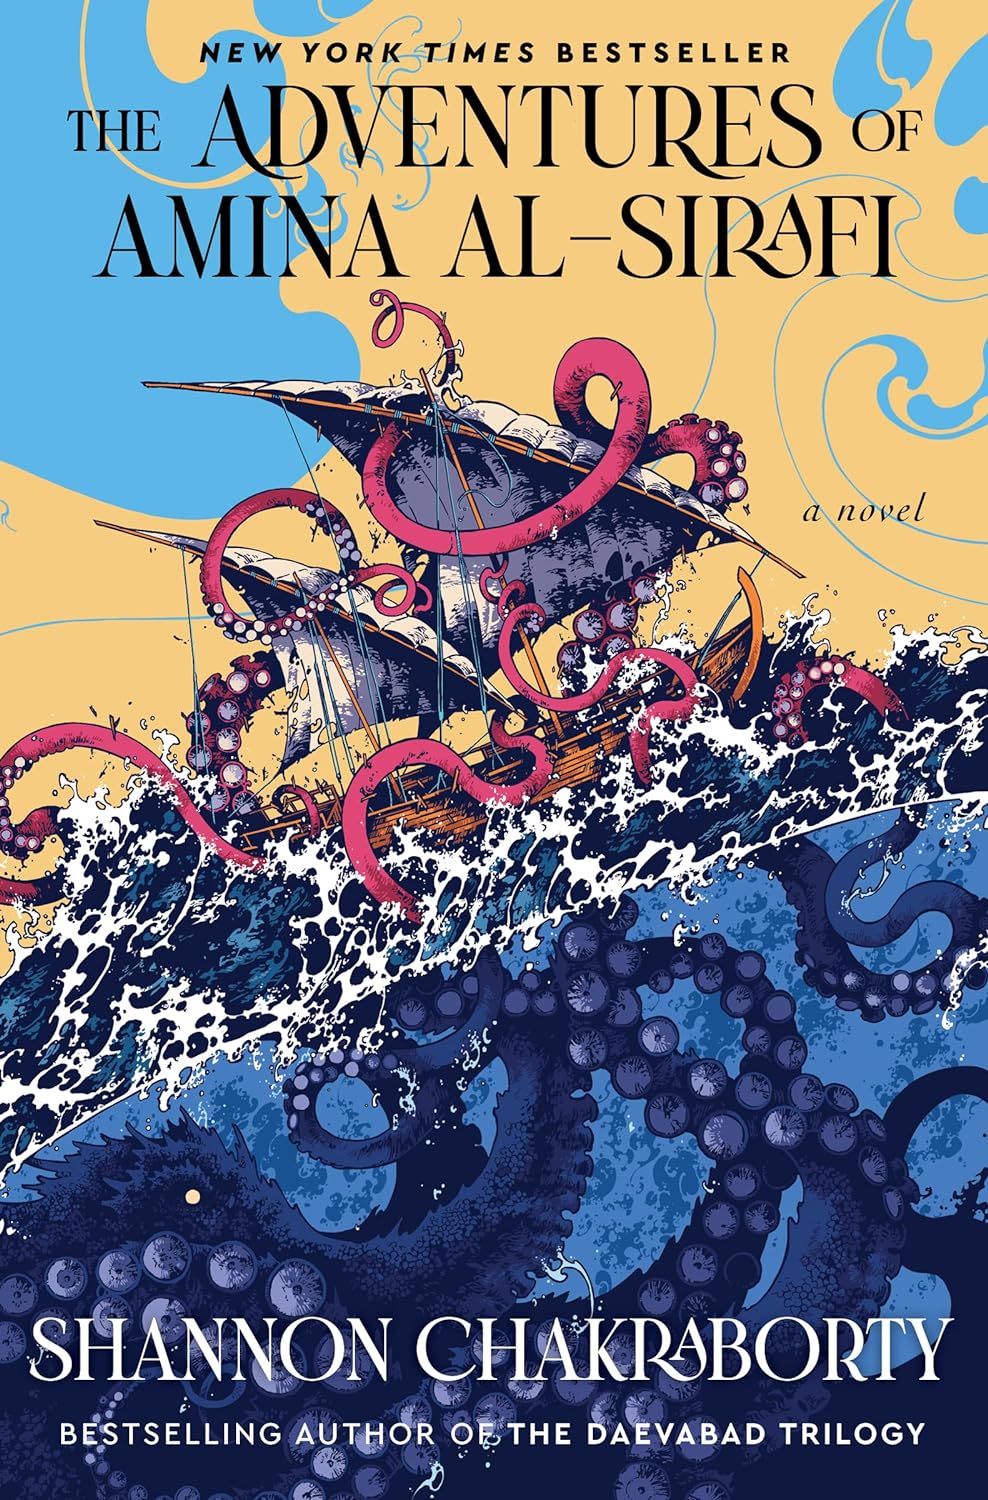 The Adventures of Amina Al-Sirafi, by Shannon Chakraborty